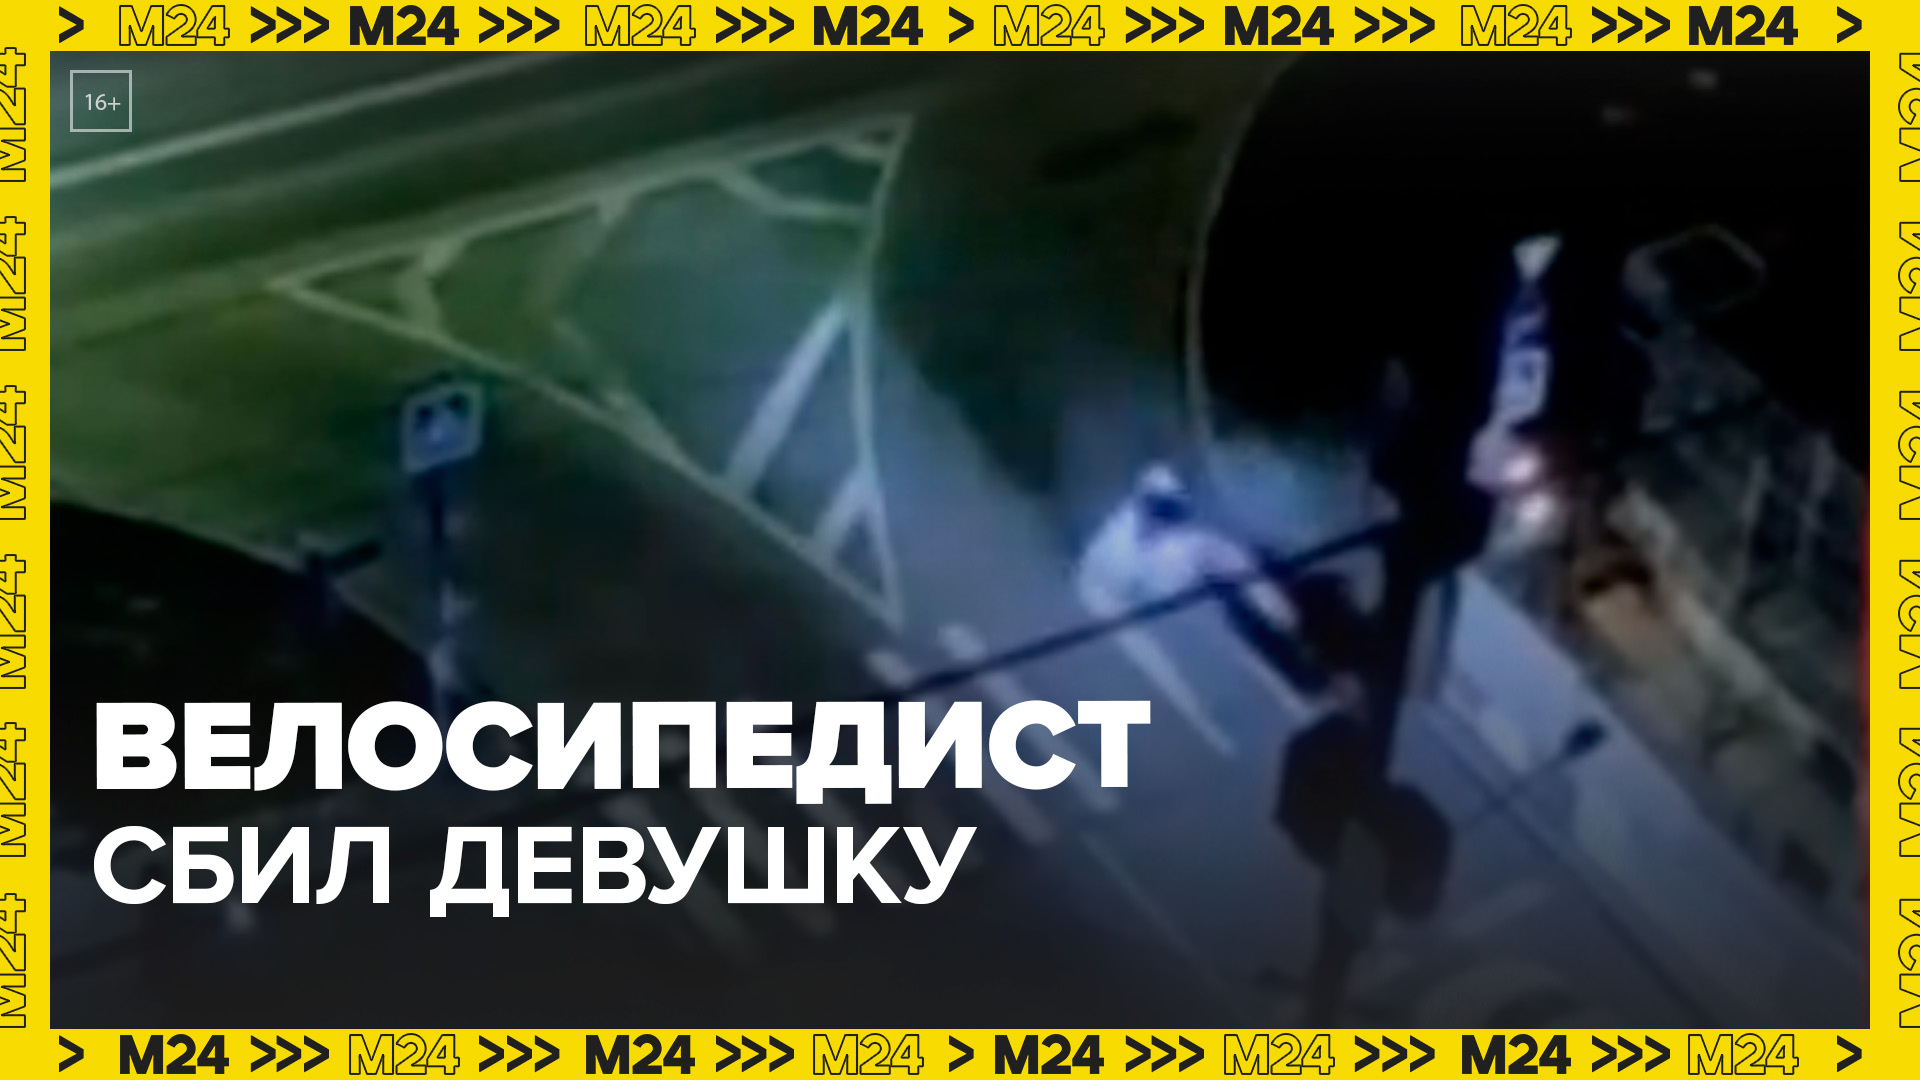 "Актуальный репортаж": велосипедист сбил девушку на пешеходном переходе - Москва 24